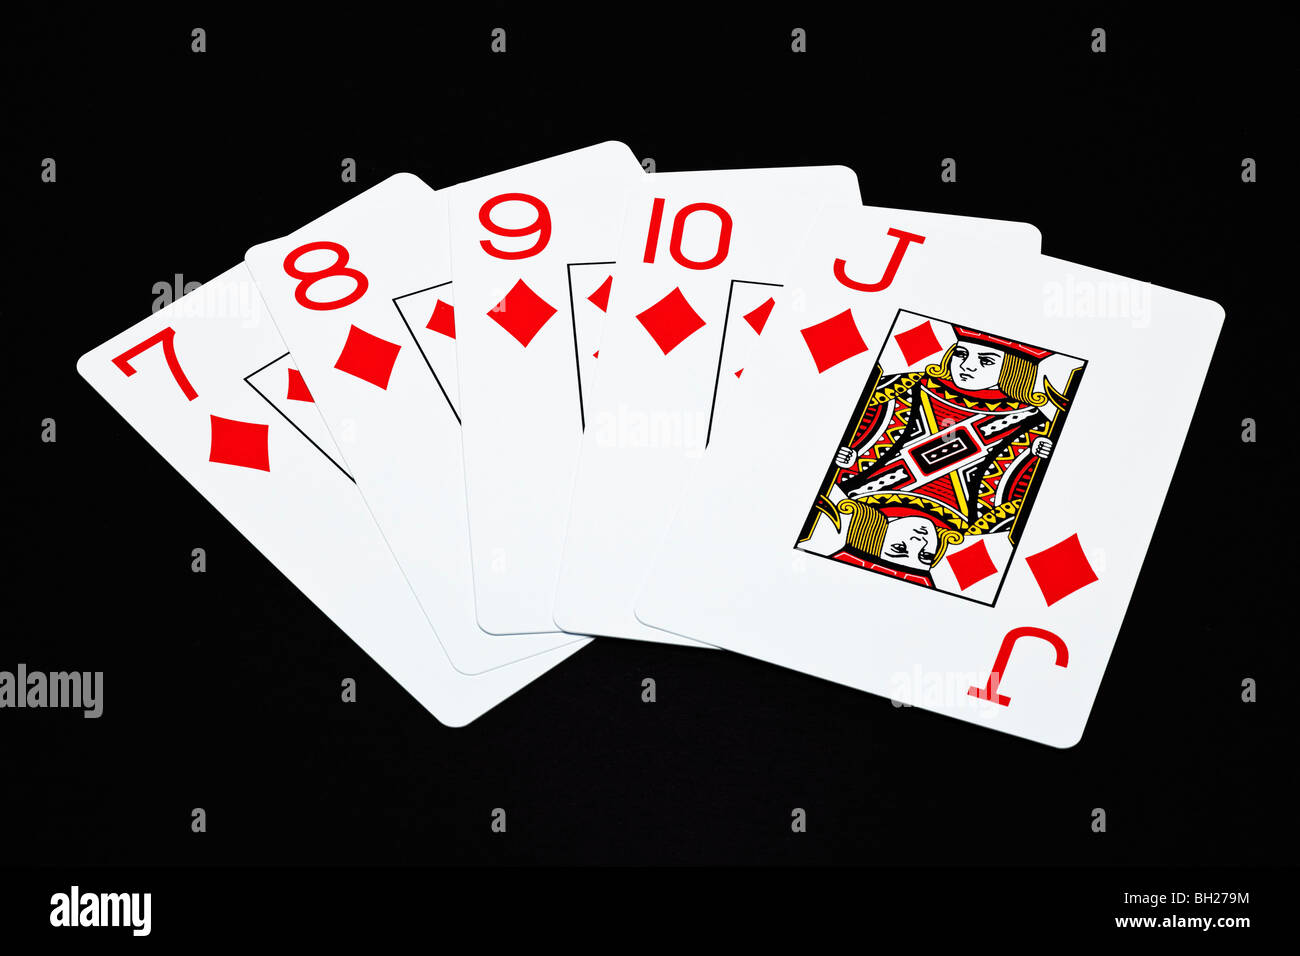 Jugando a las cartas que muestra una escalera de color en una mano de póquer Foto de stock